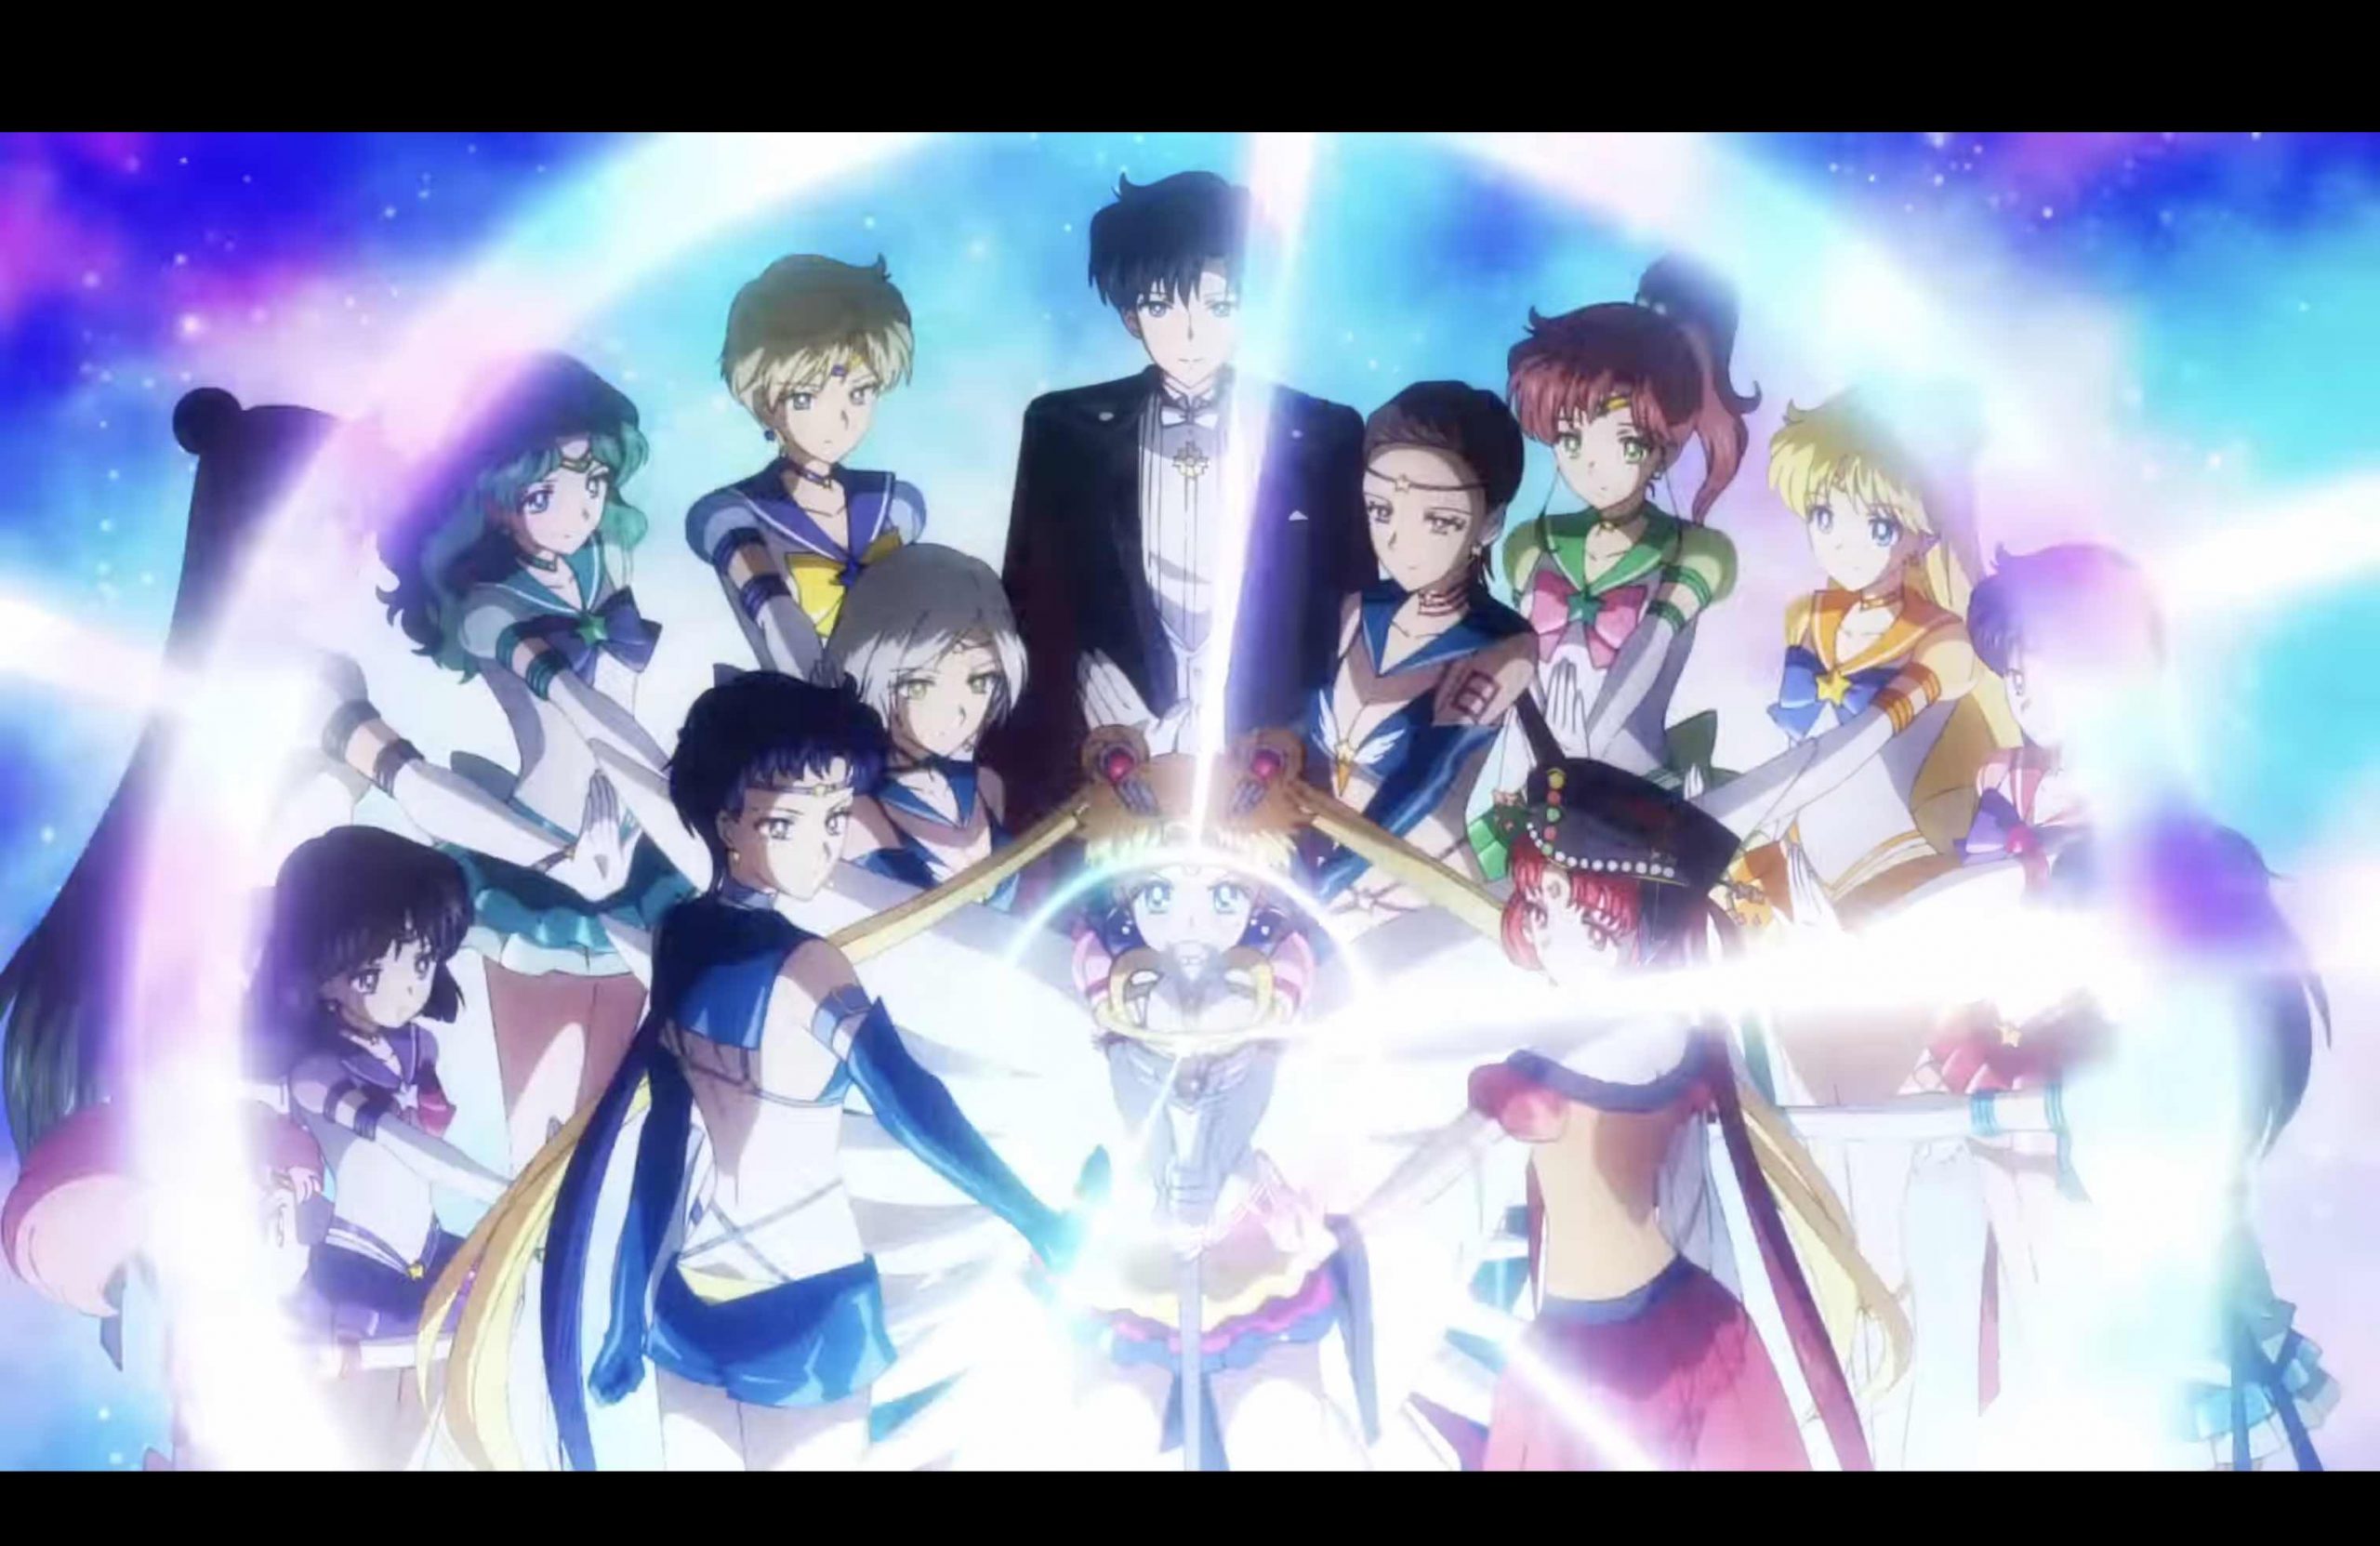 Trailer de Sailor Moon Cosmos mostra tema musical